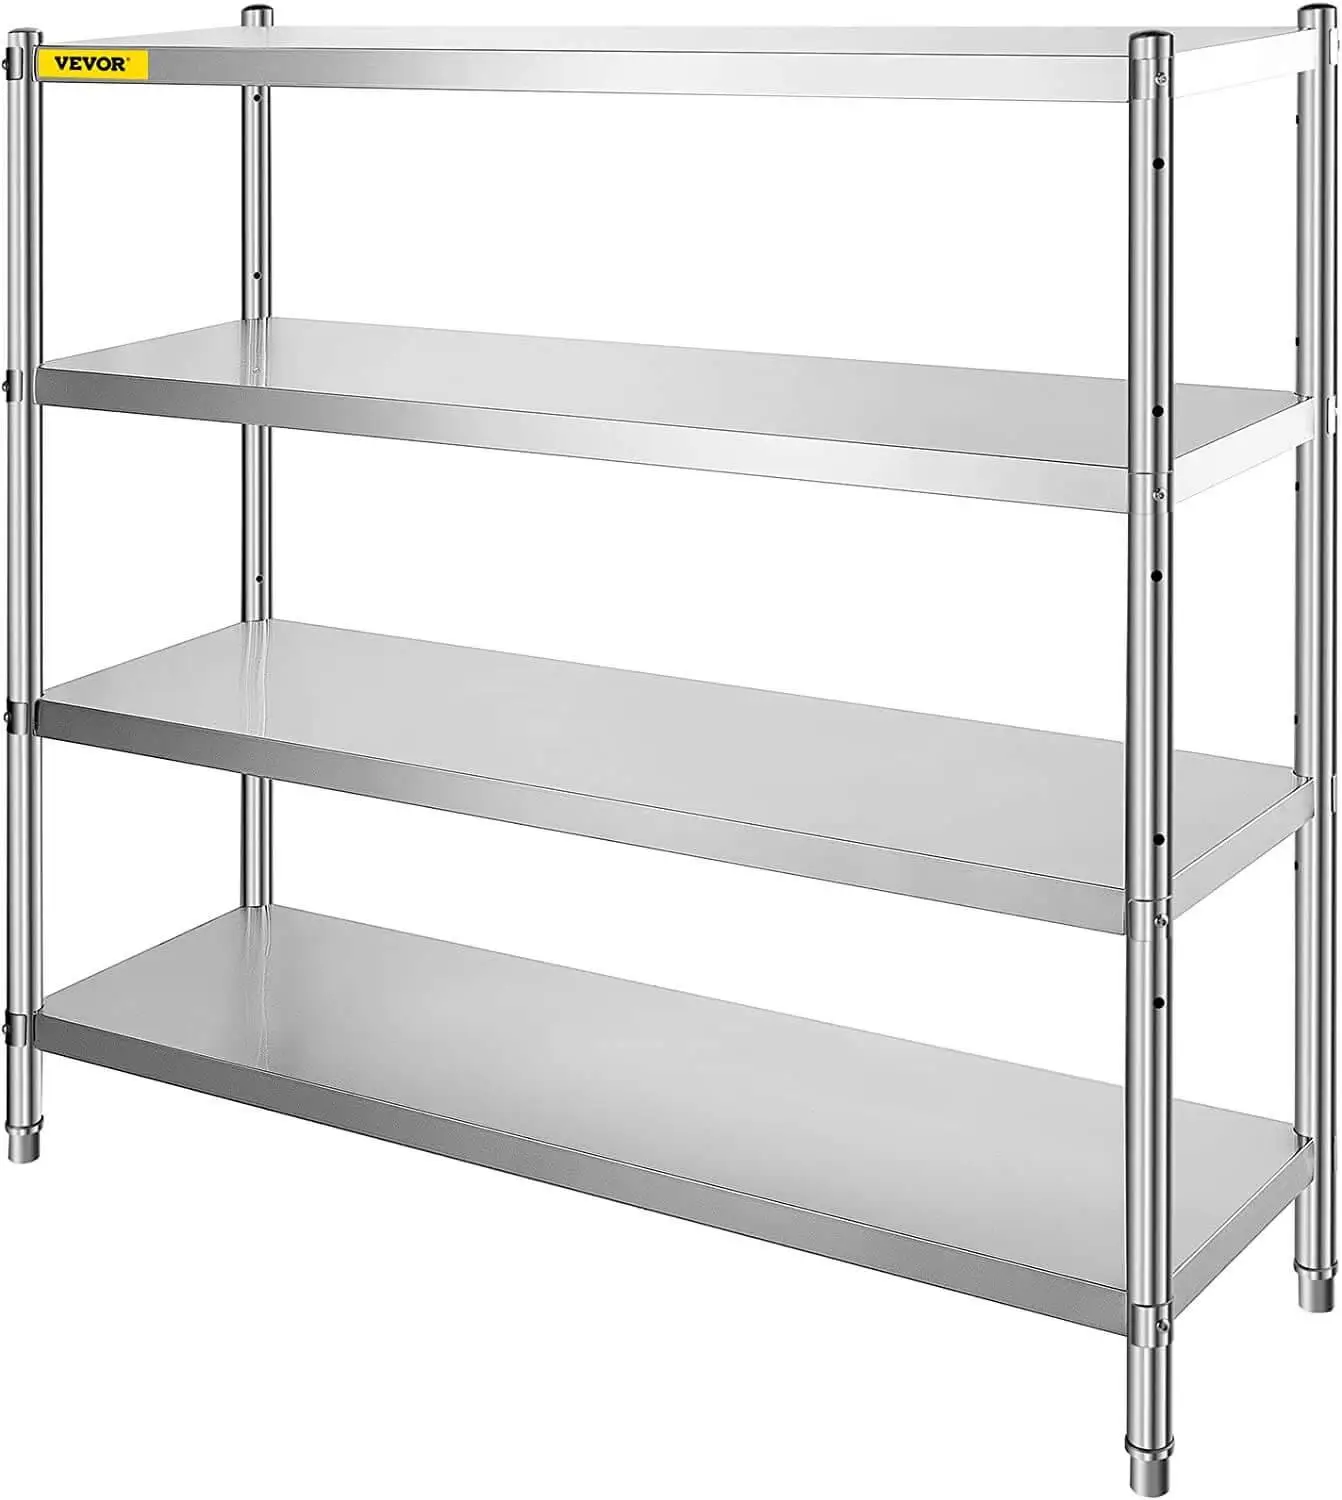 Vevor stainless steel shelves